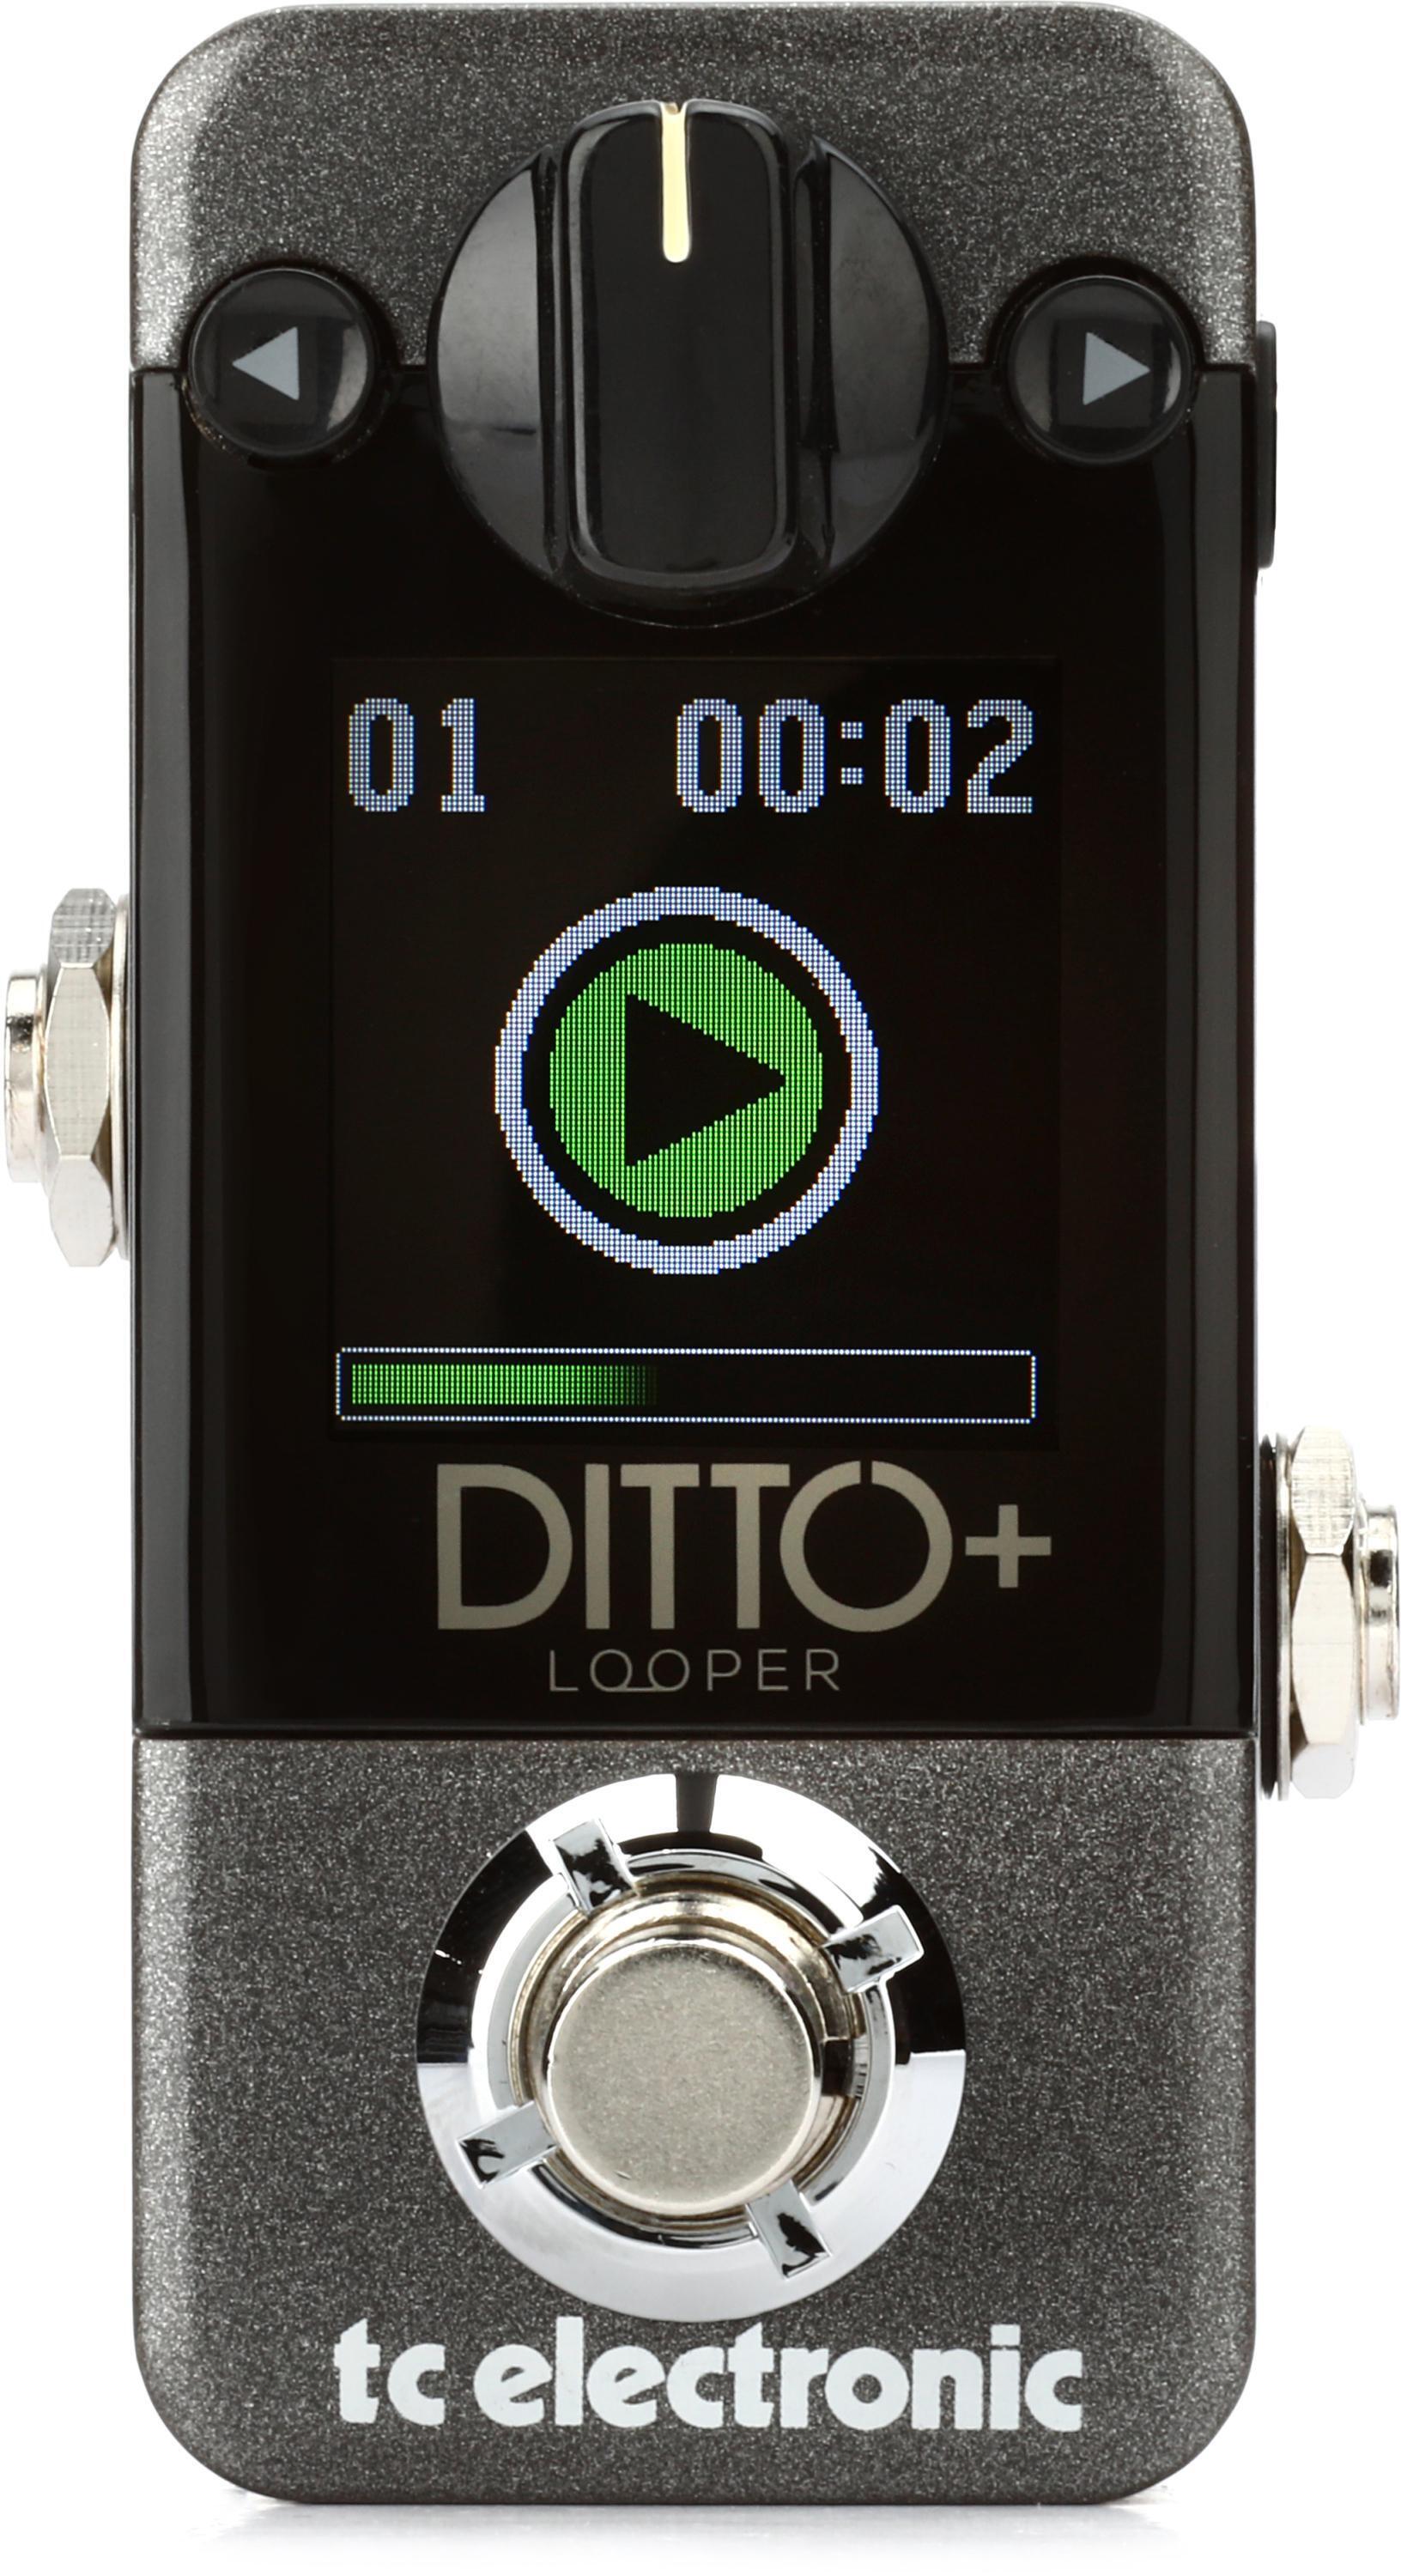 8,400円[最新機種]TC electronic Ditto + looper